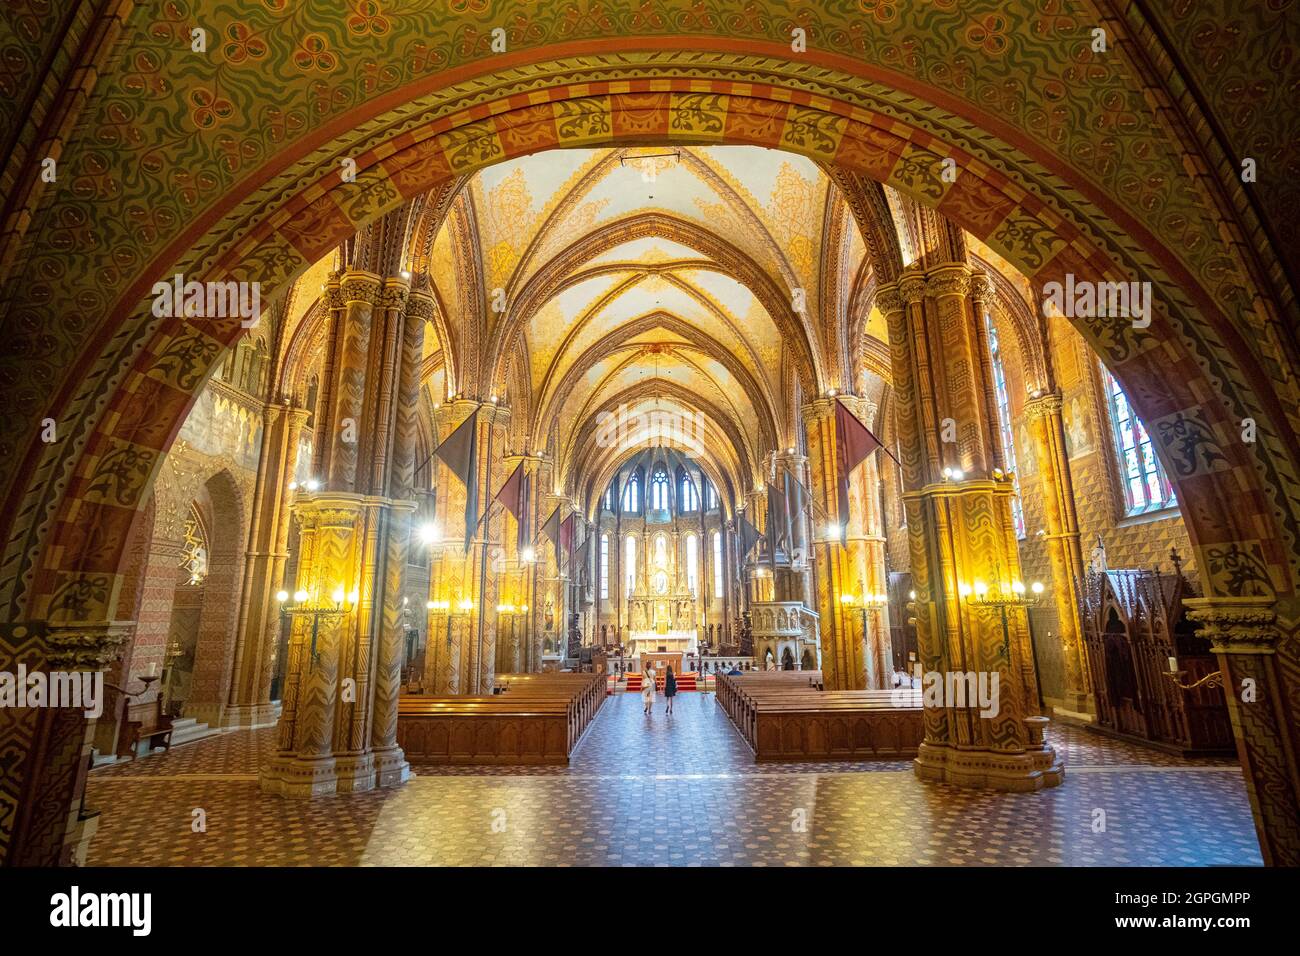 Hongrie, Budapest, classée au patrimoine mondial de l'UNESCO, quartier de Buda, colline du château, église Matthias (église notre-Dame de l'Assomption de Budavár) Banque D'Images